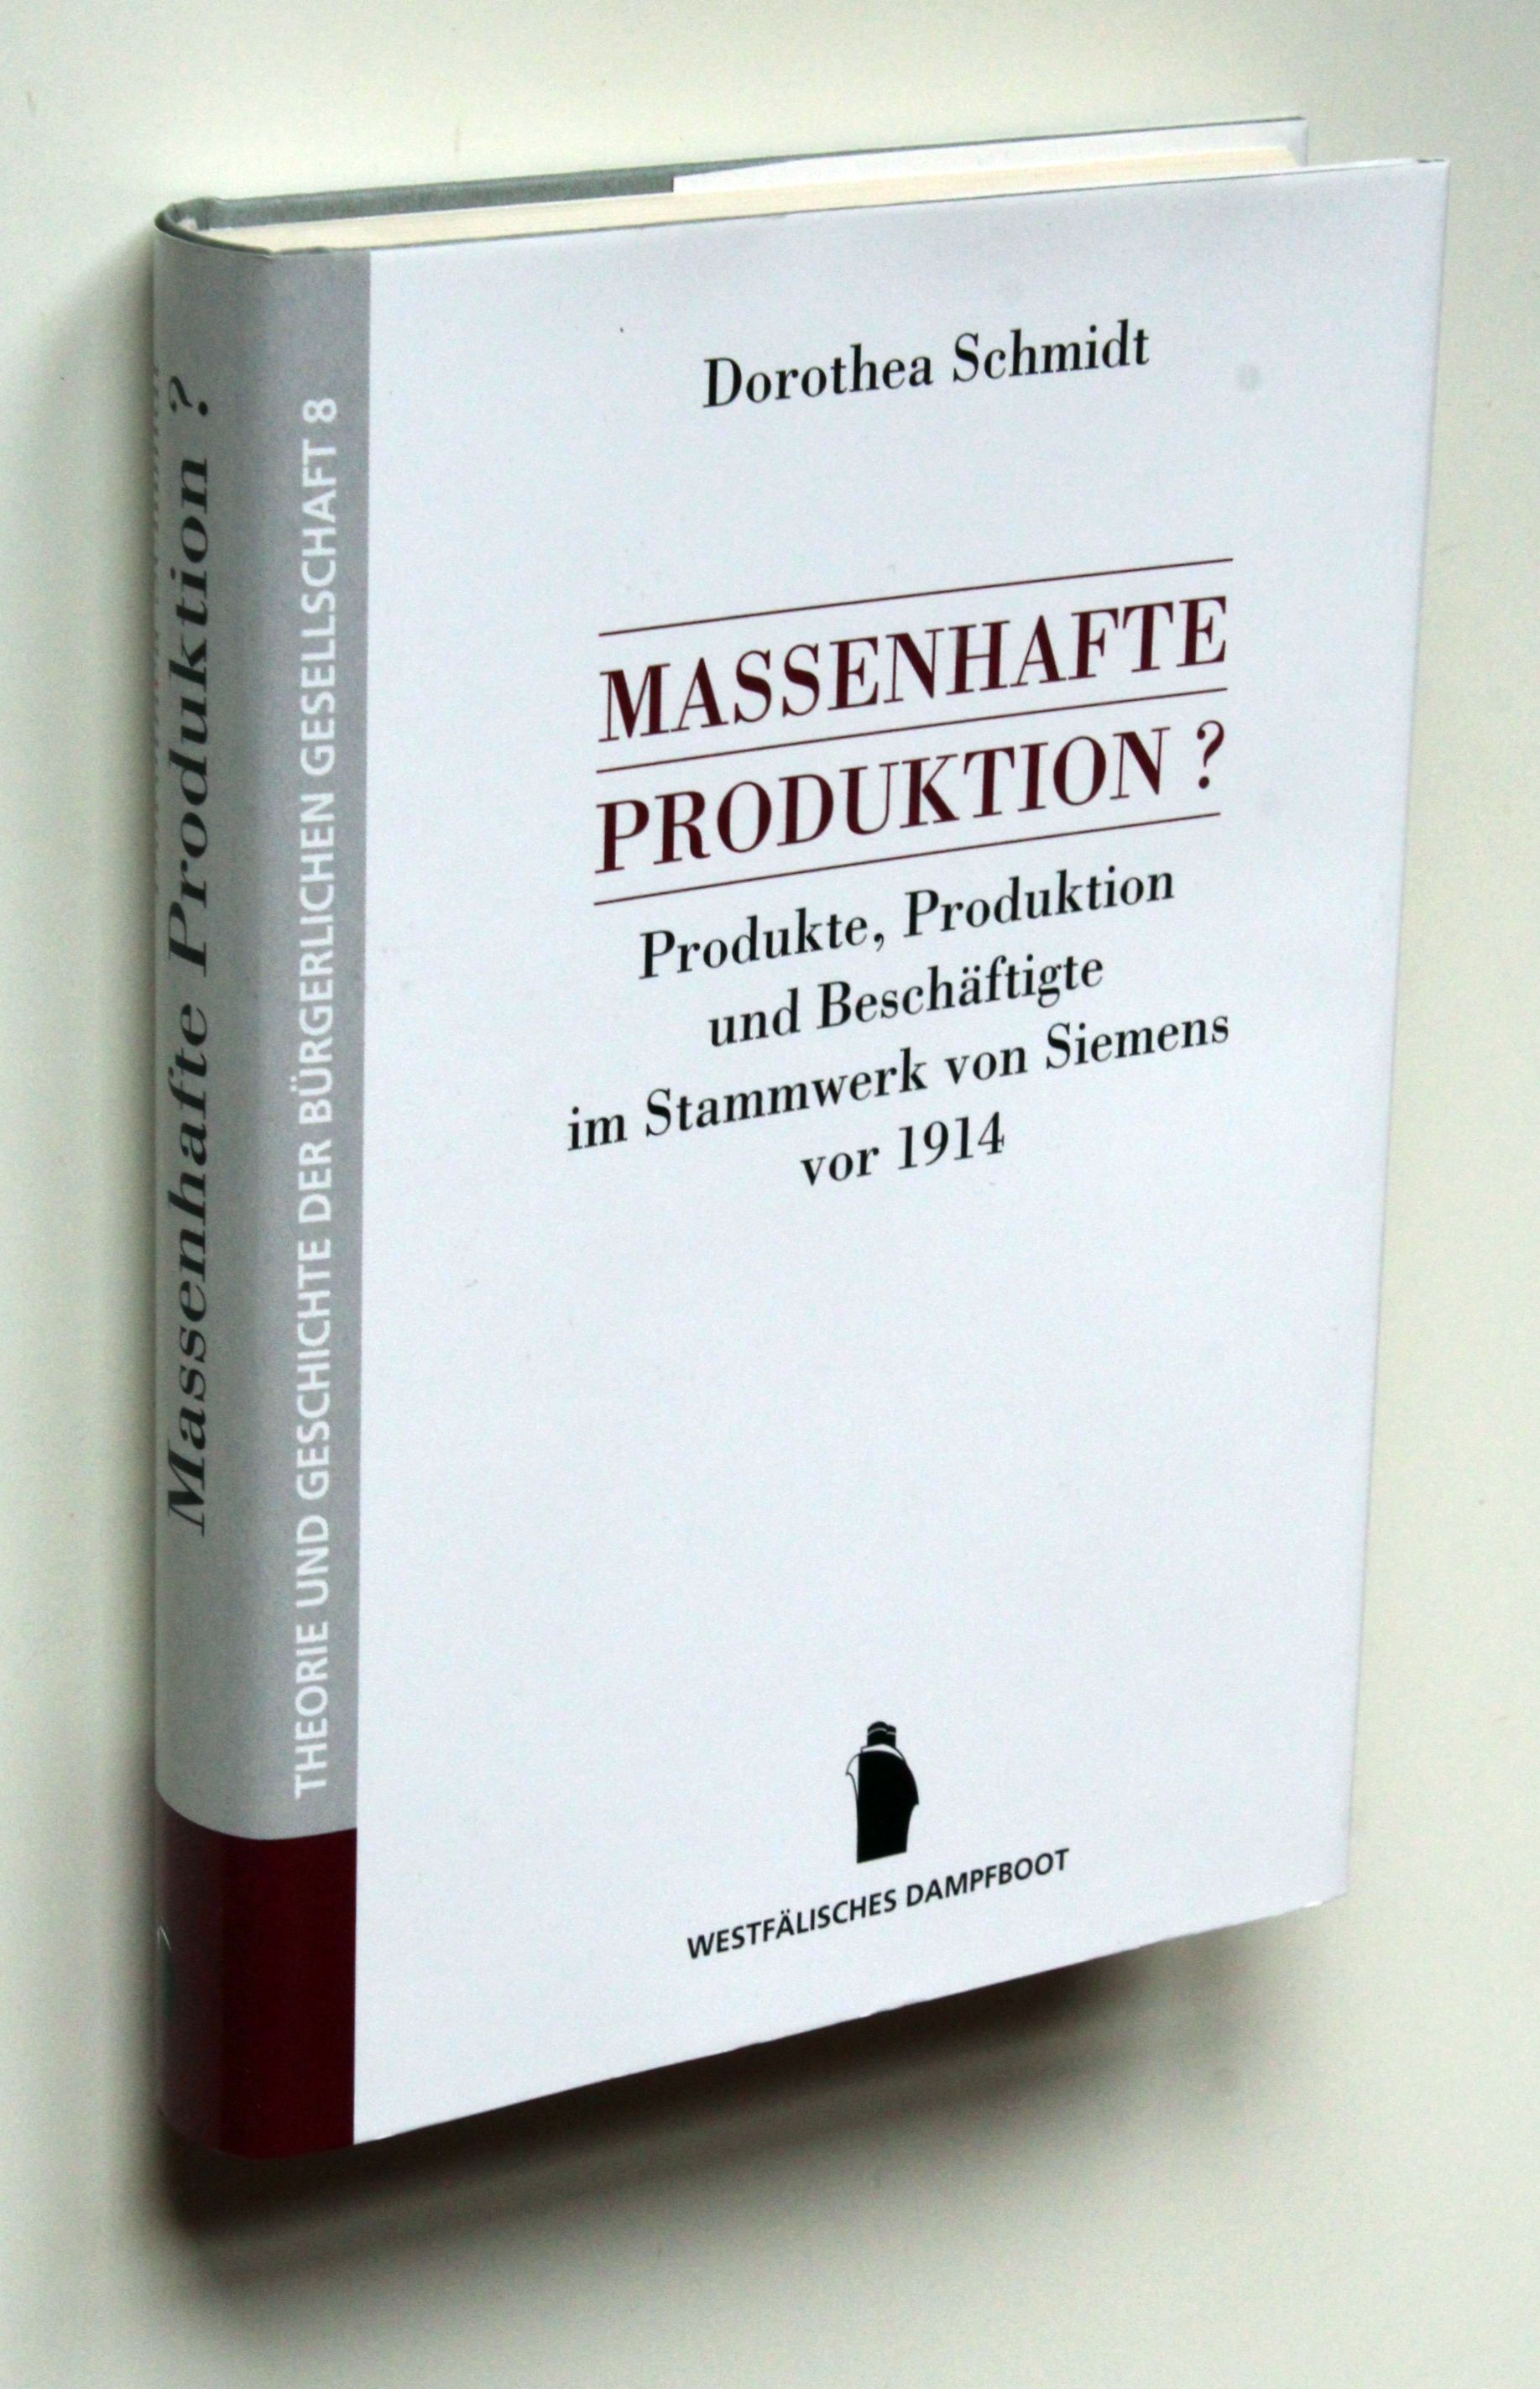 Massenhafte Produktion? Produkte, Produktion und Beschäftigte im Stammwerk von Siemens vor 1914. - Schmidt, Dorothea